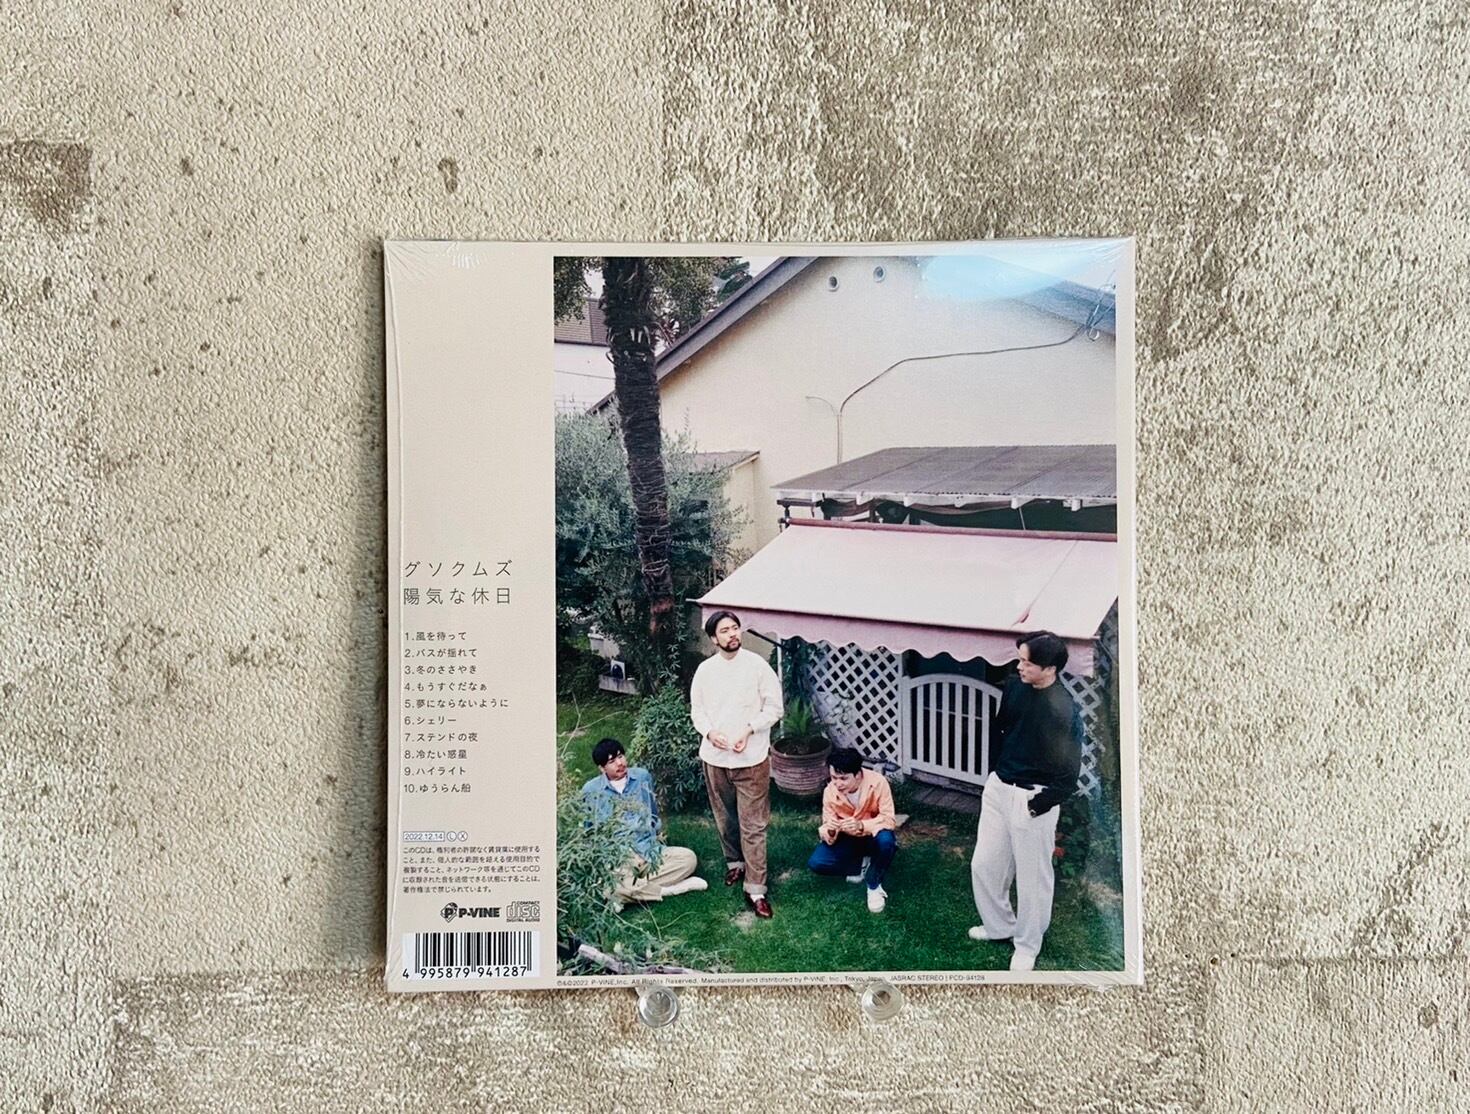 グソクムズ 陽気な休日 2nd アルバム LP - 邦楽